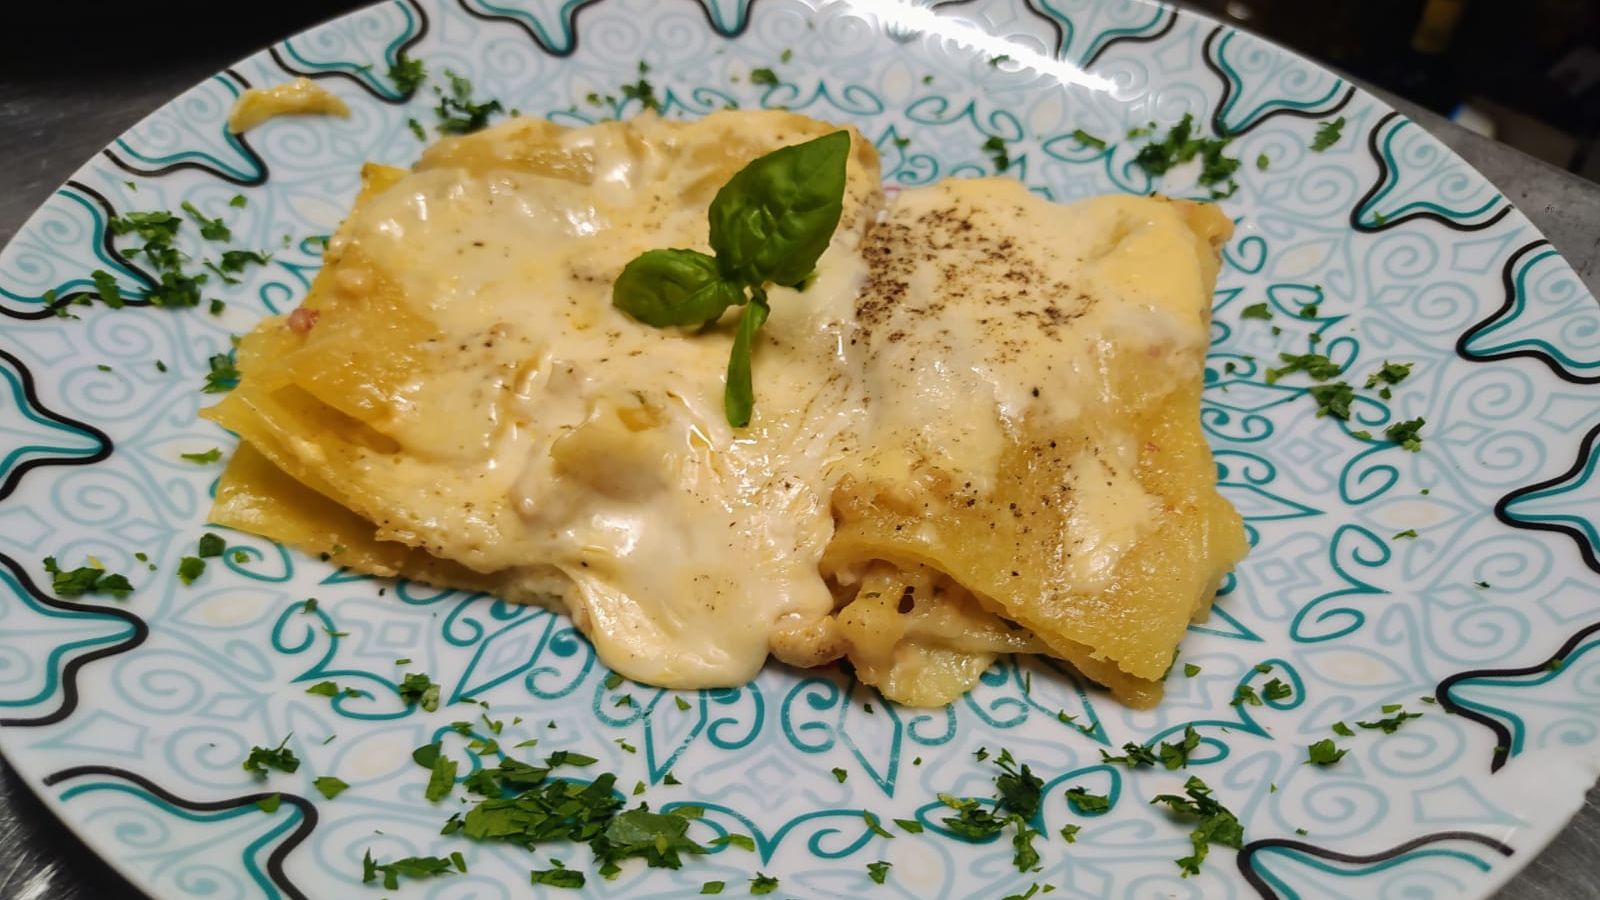 Lasagna di mare con gamberetti,salmone e besciamella - Piranha Osteria Salentina 2.0, Lecce